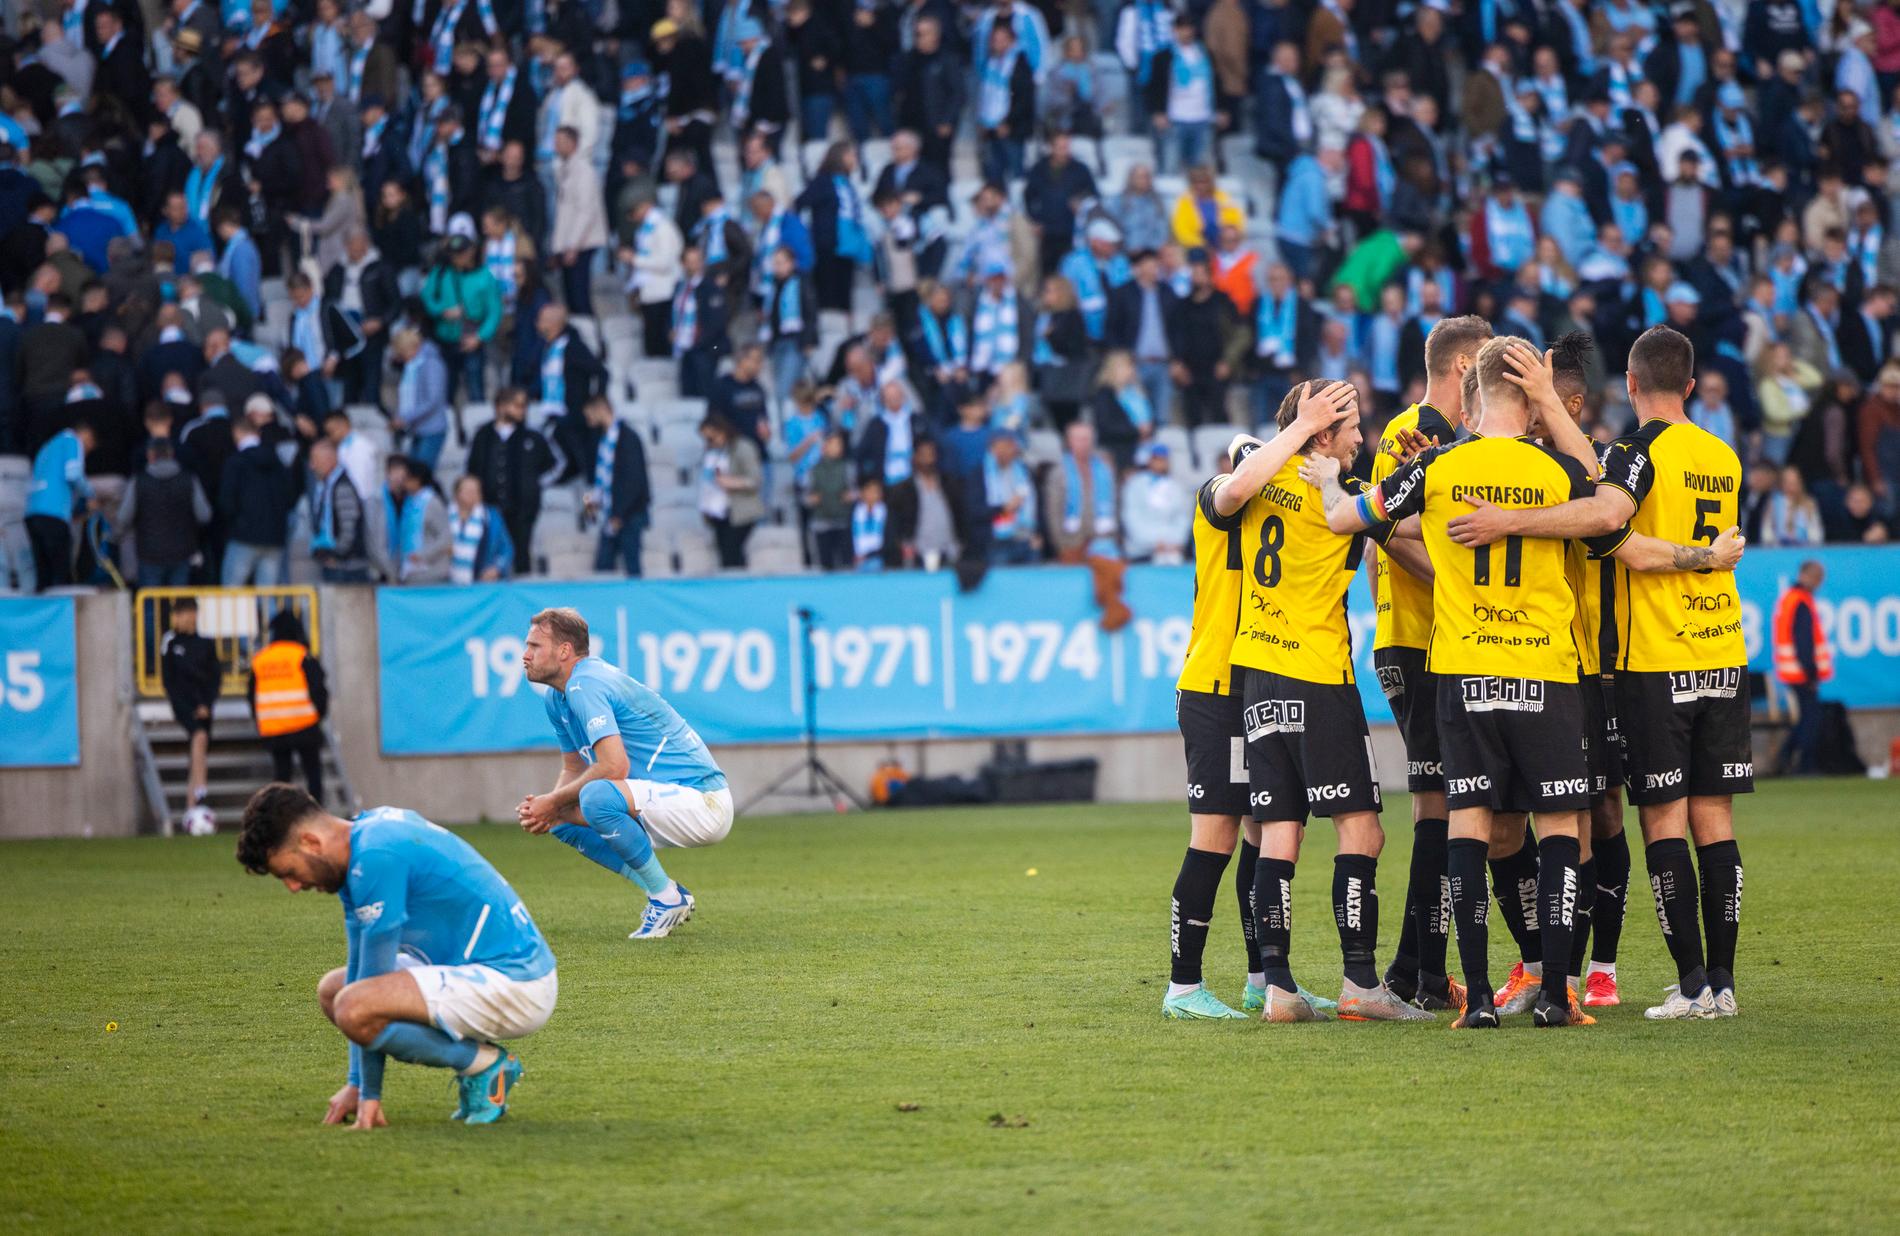 Häckenspelarna jublar efter segern mot Malmö FF.